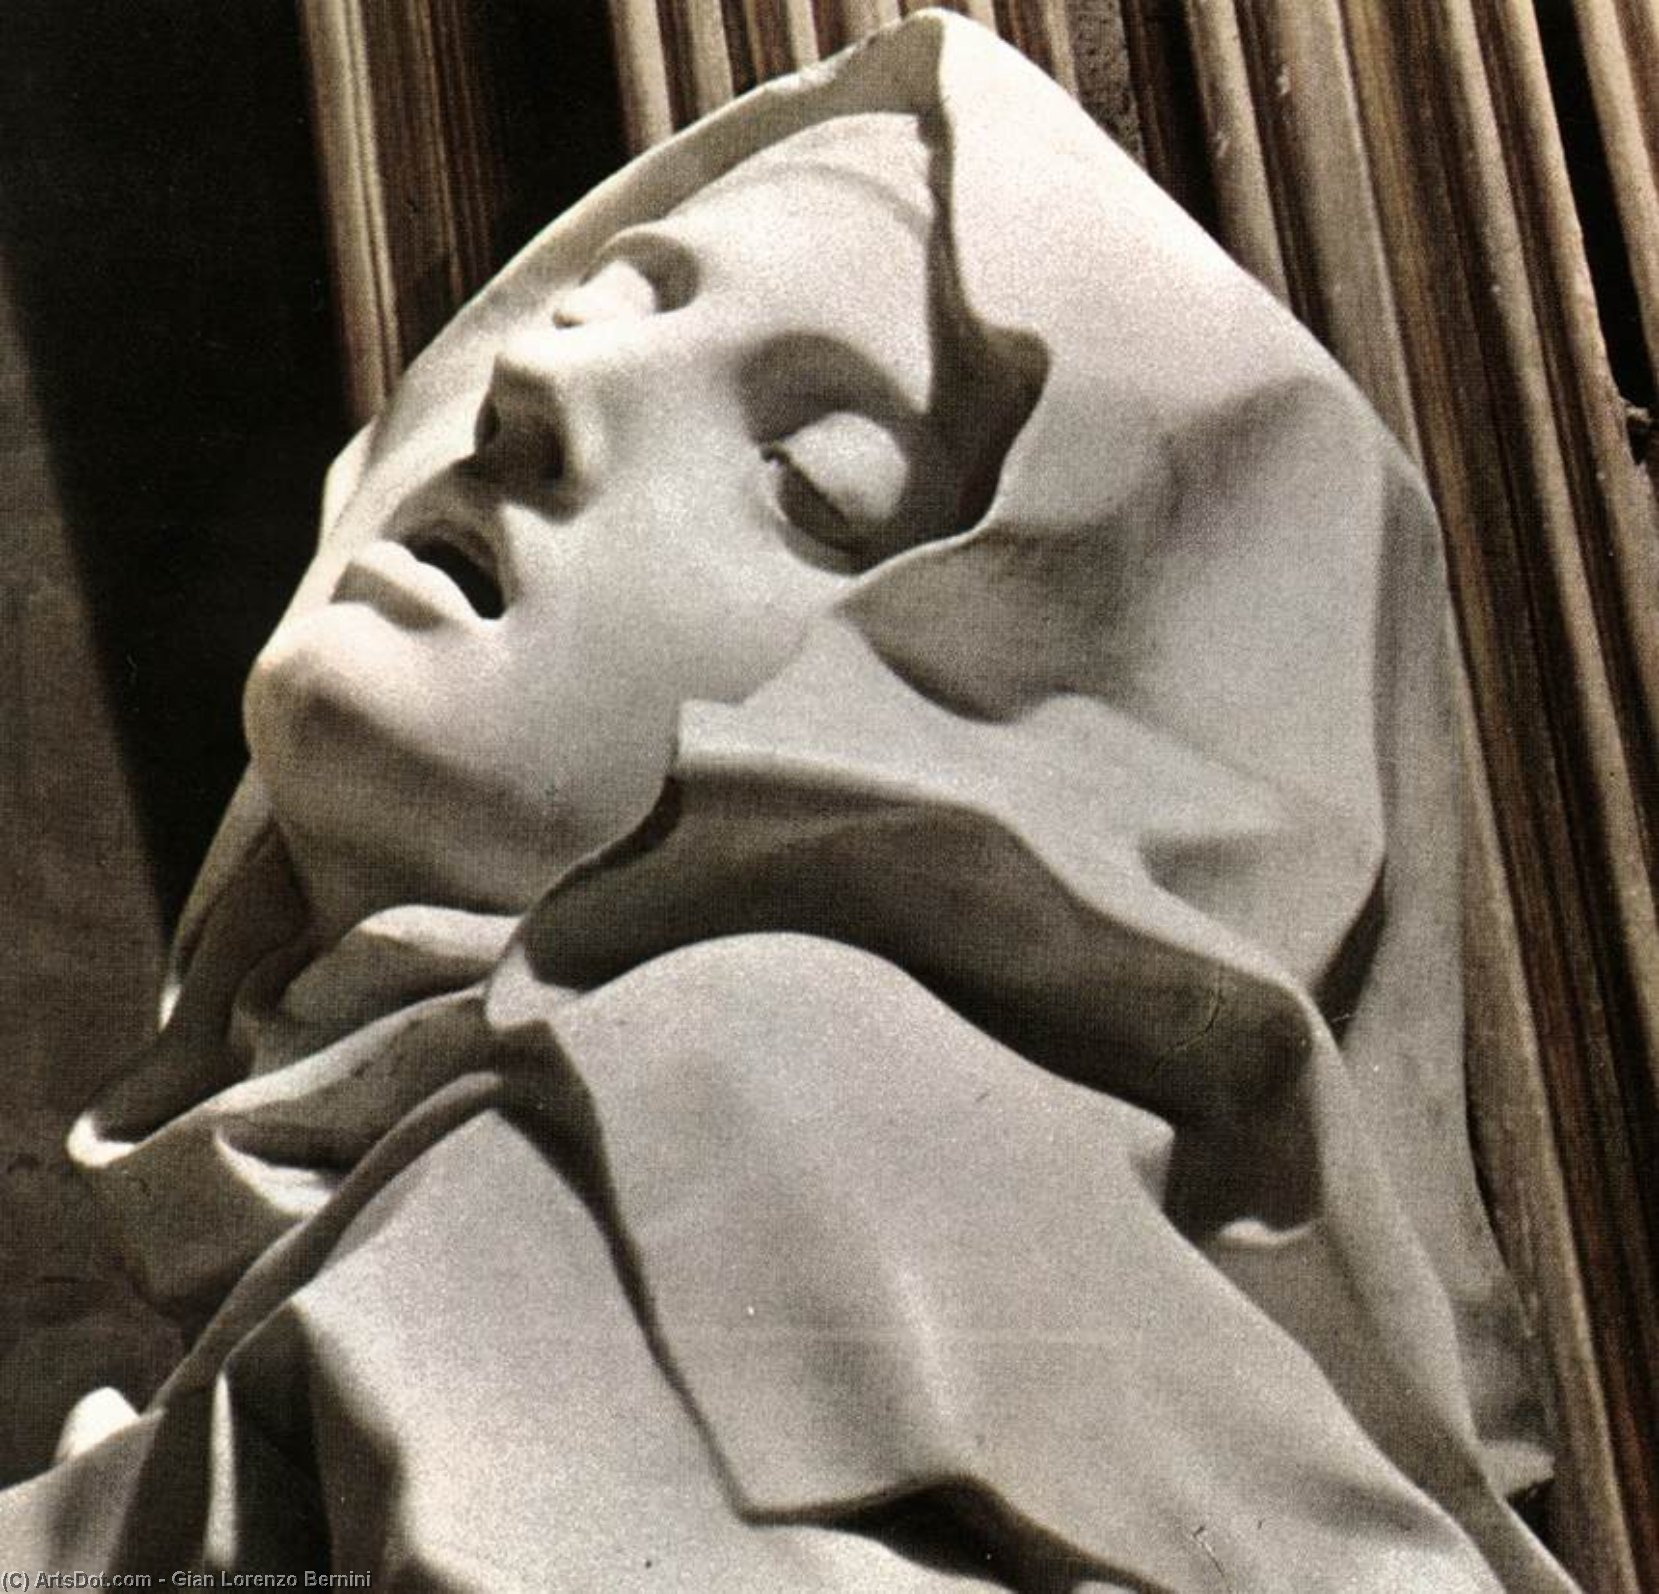 WikiOO.org - Enciklopedija likovnih umjetnosti - Slikarstvo, umjetnička djela Gian Lorenzo Bernini - The Ecstasy of Saint Therese (detail)